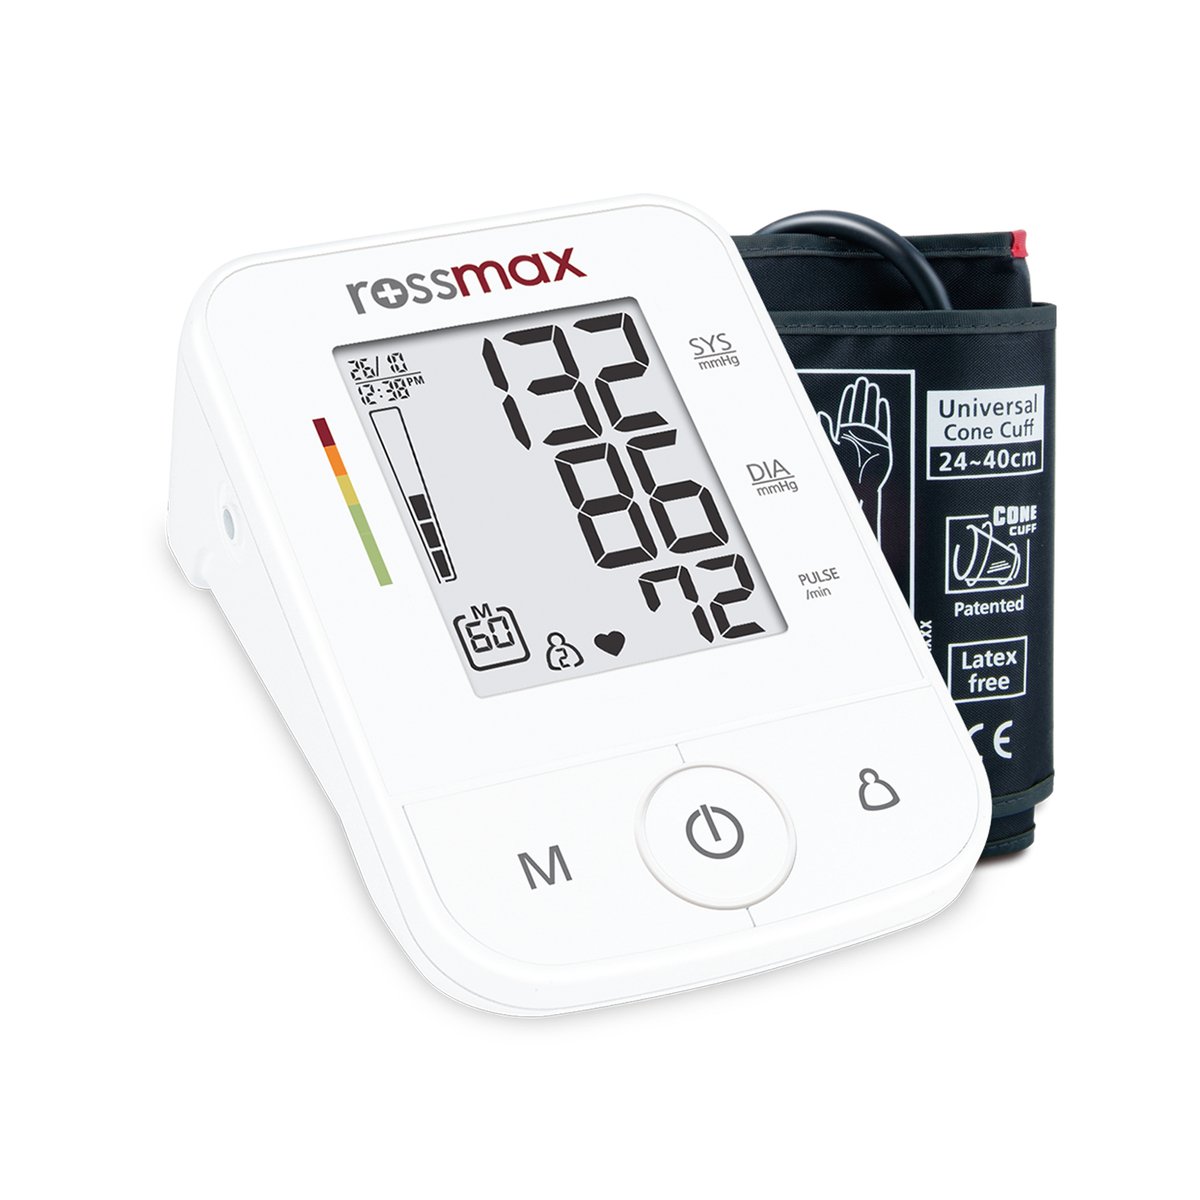 Rossmax Blood Pressure Monitor X3